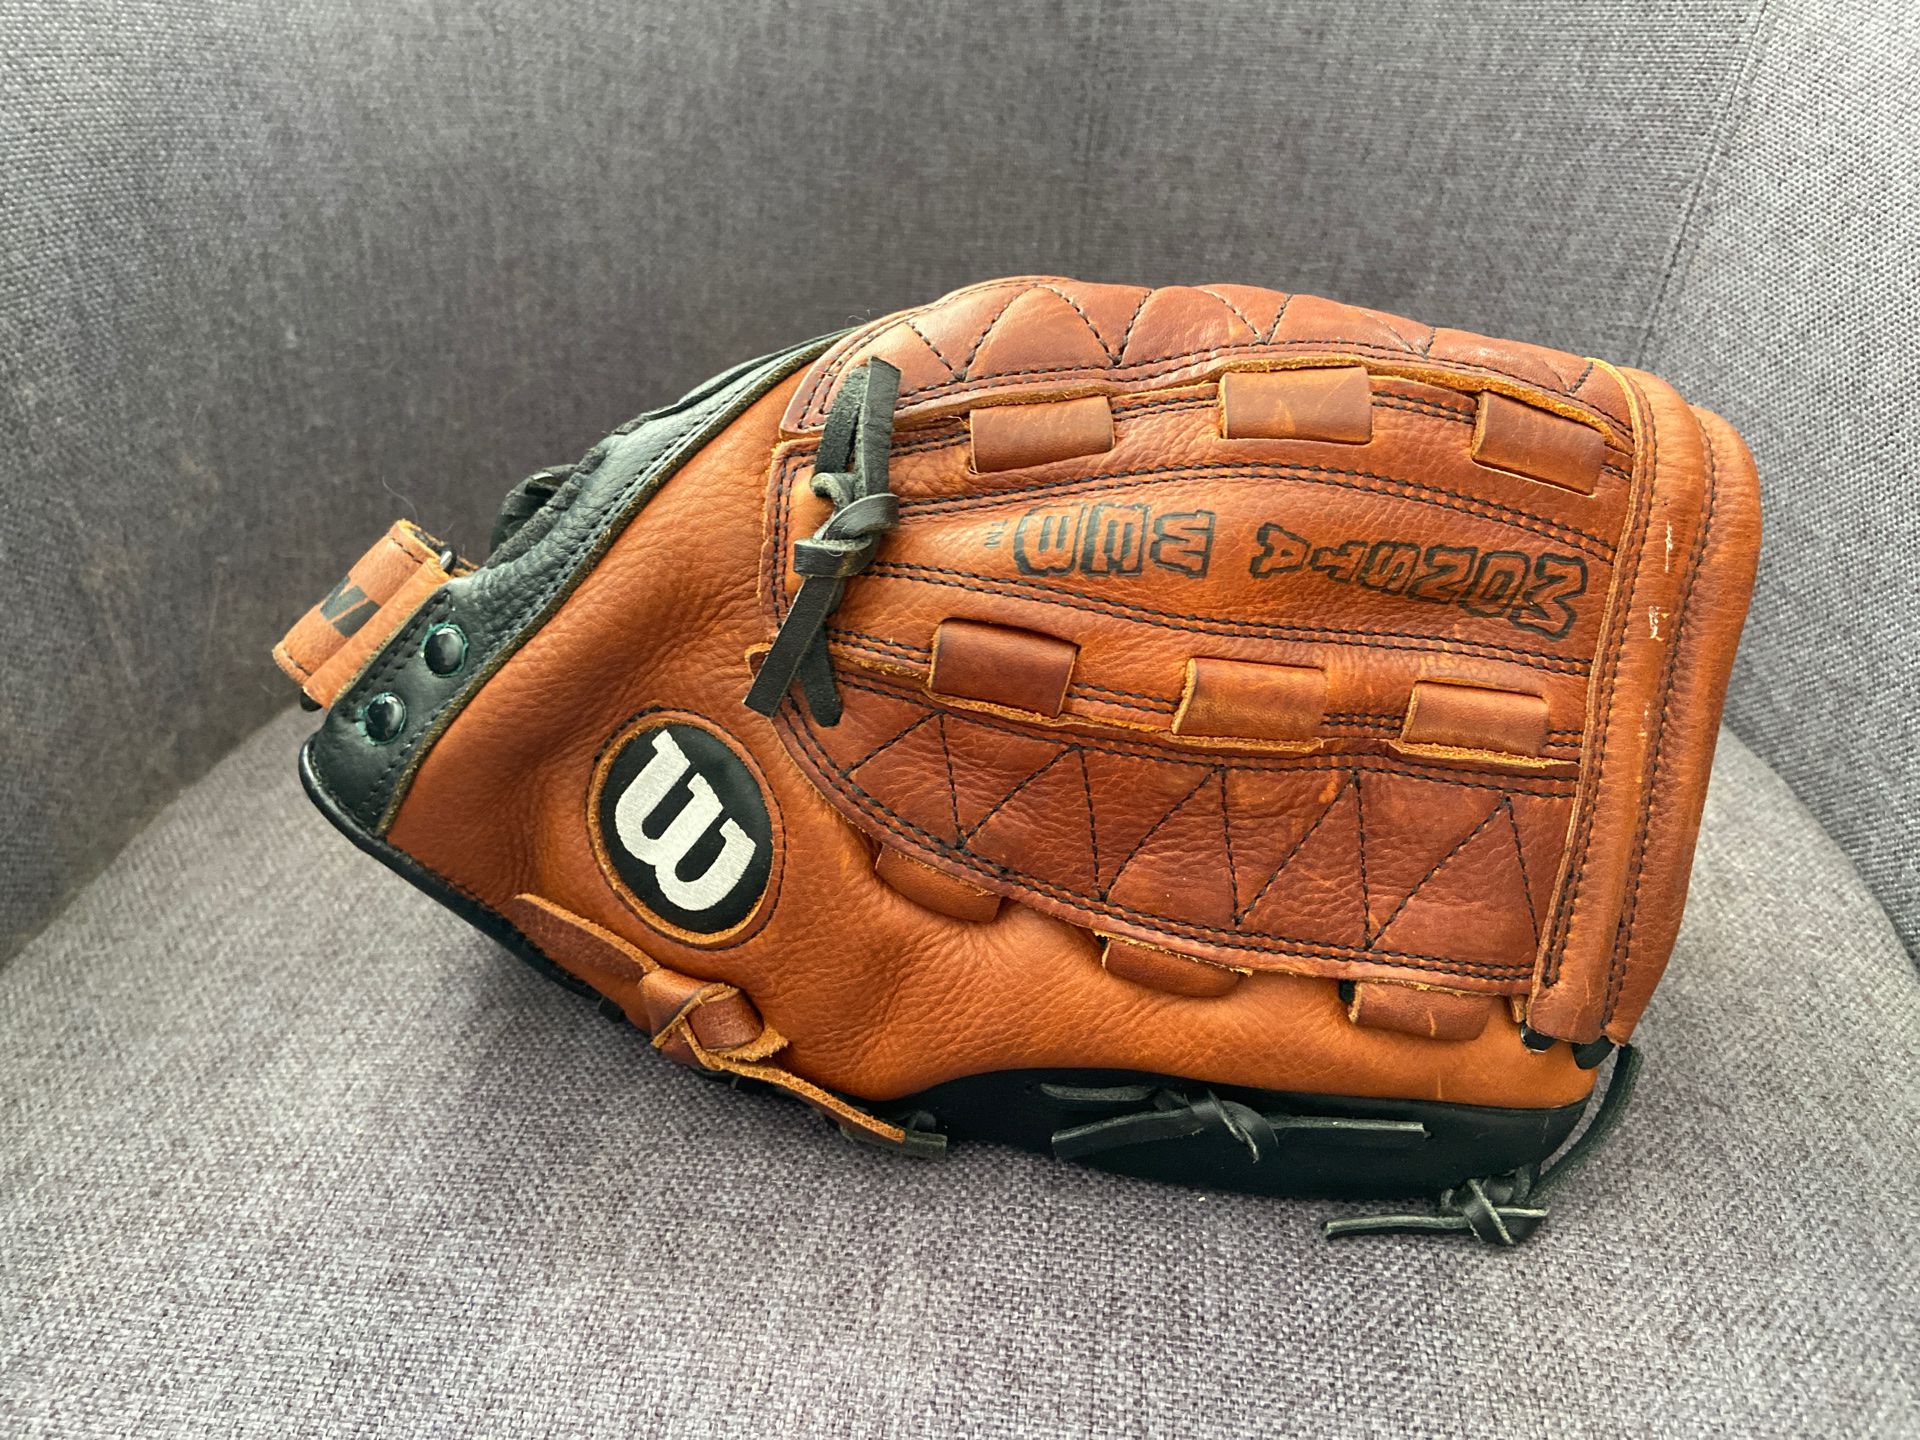 Wilson Demarini 13” softball glove